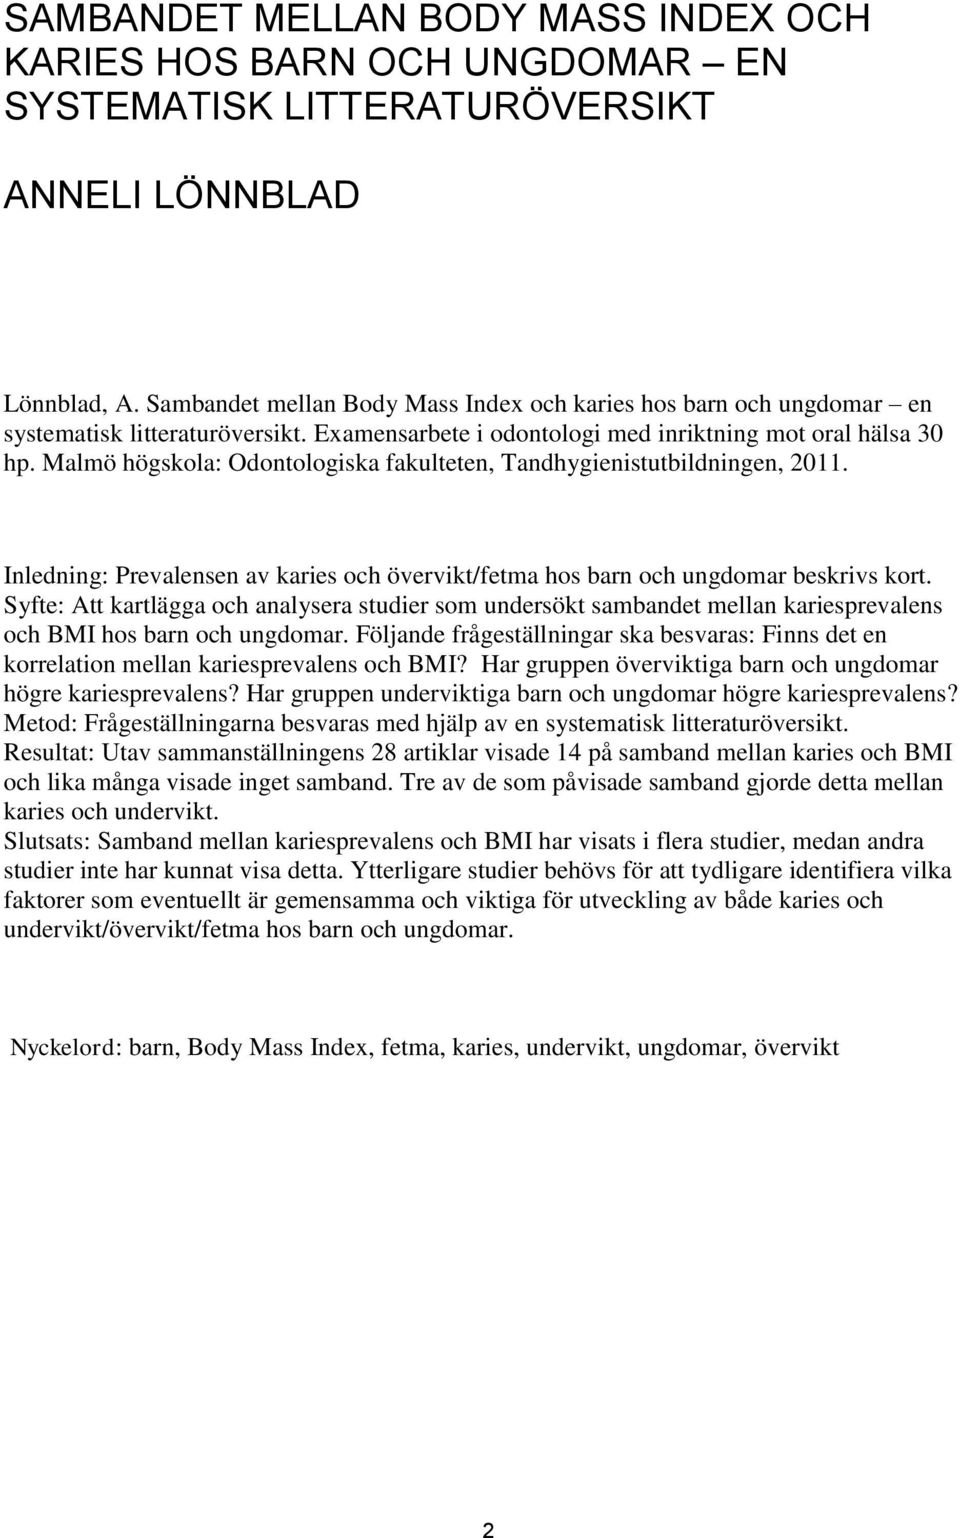 Malmö högskola: Odontologiska fakulteten, andhygienistutbildningen, 2011. Inledning: Prevalensen av karies och övervikt/fetma hos barn och ungdomar beskrivs kort.